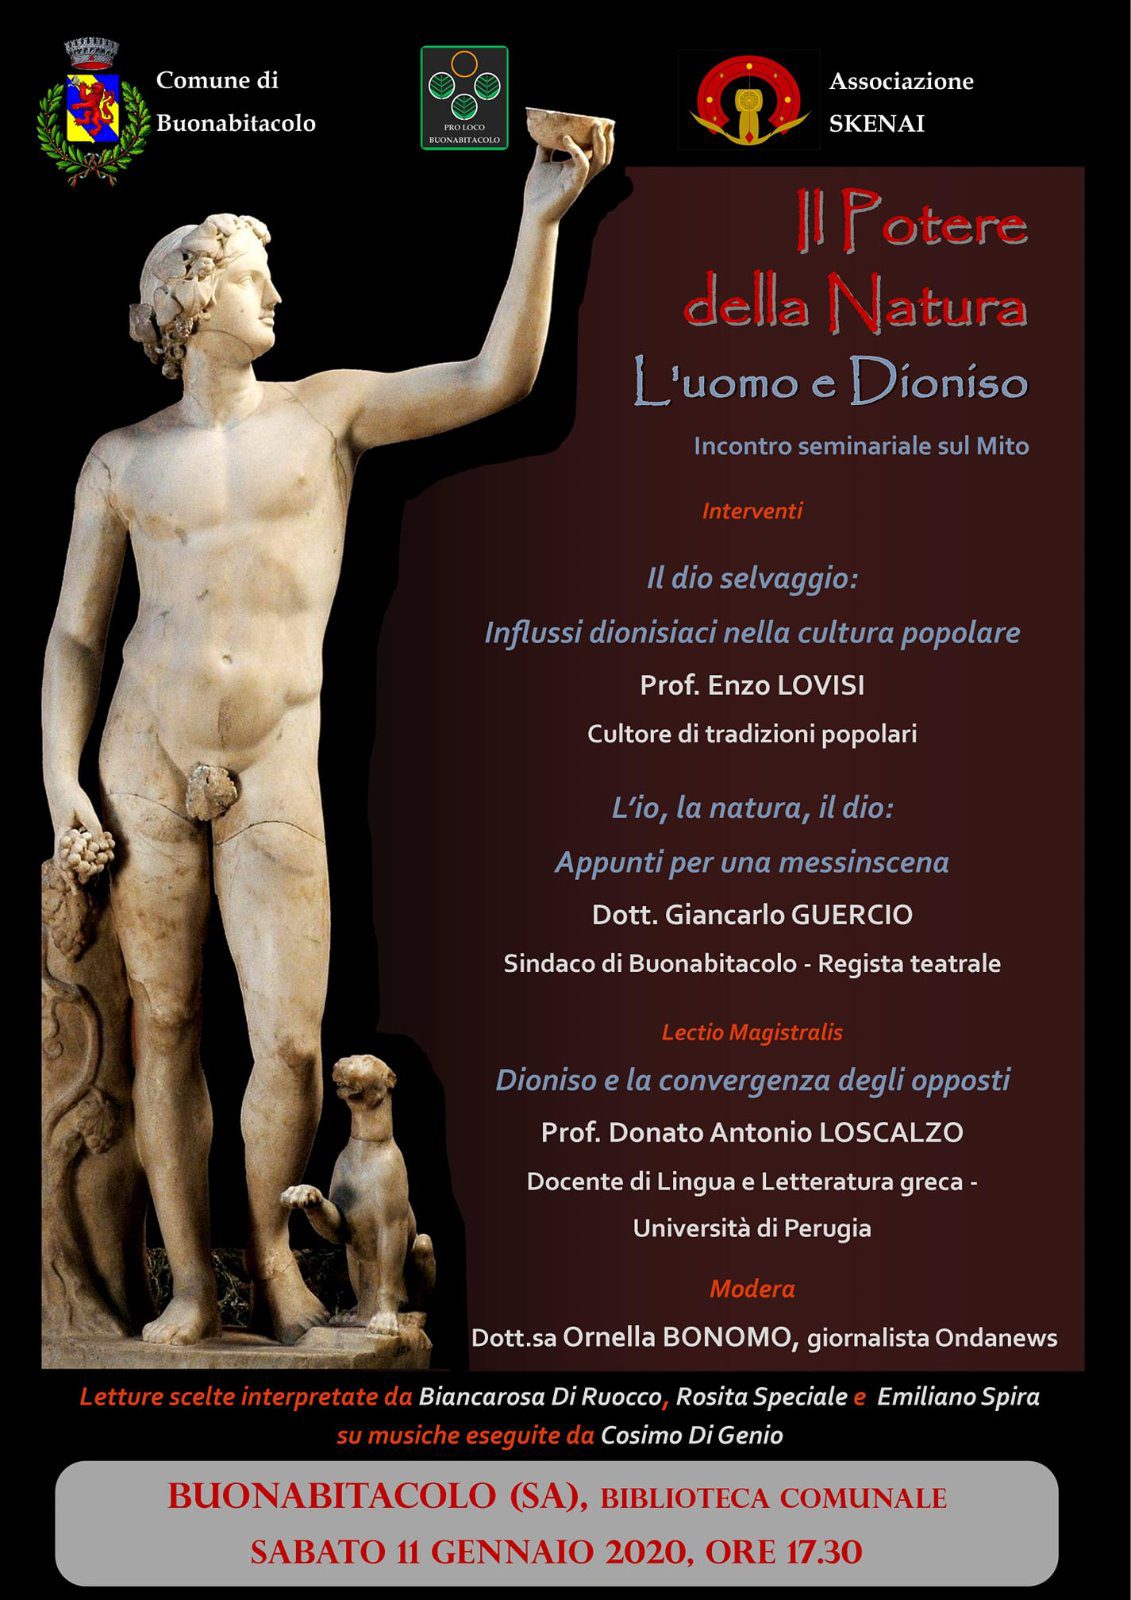 Buonabitacolo: sabato l’incontro sul mito greco: lectio magistralis di Donato Antonio Loscalzo